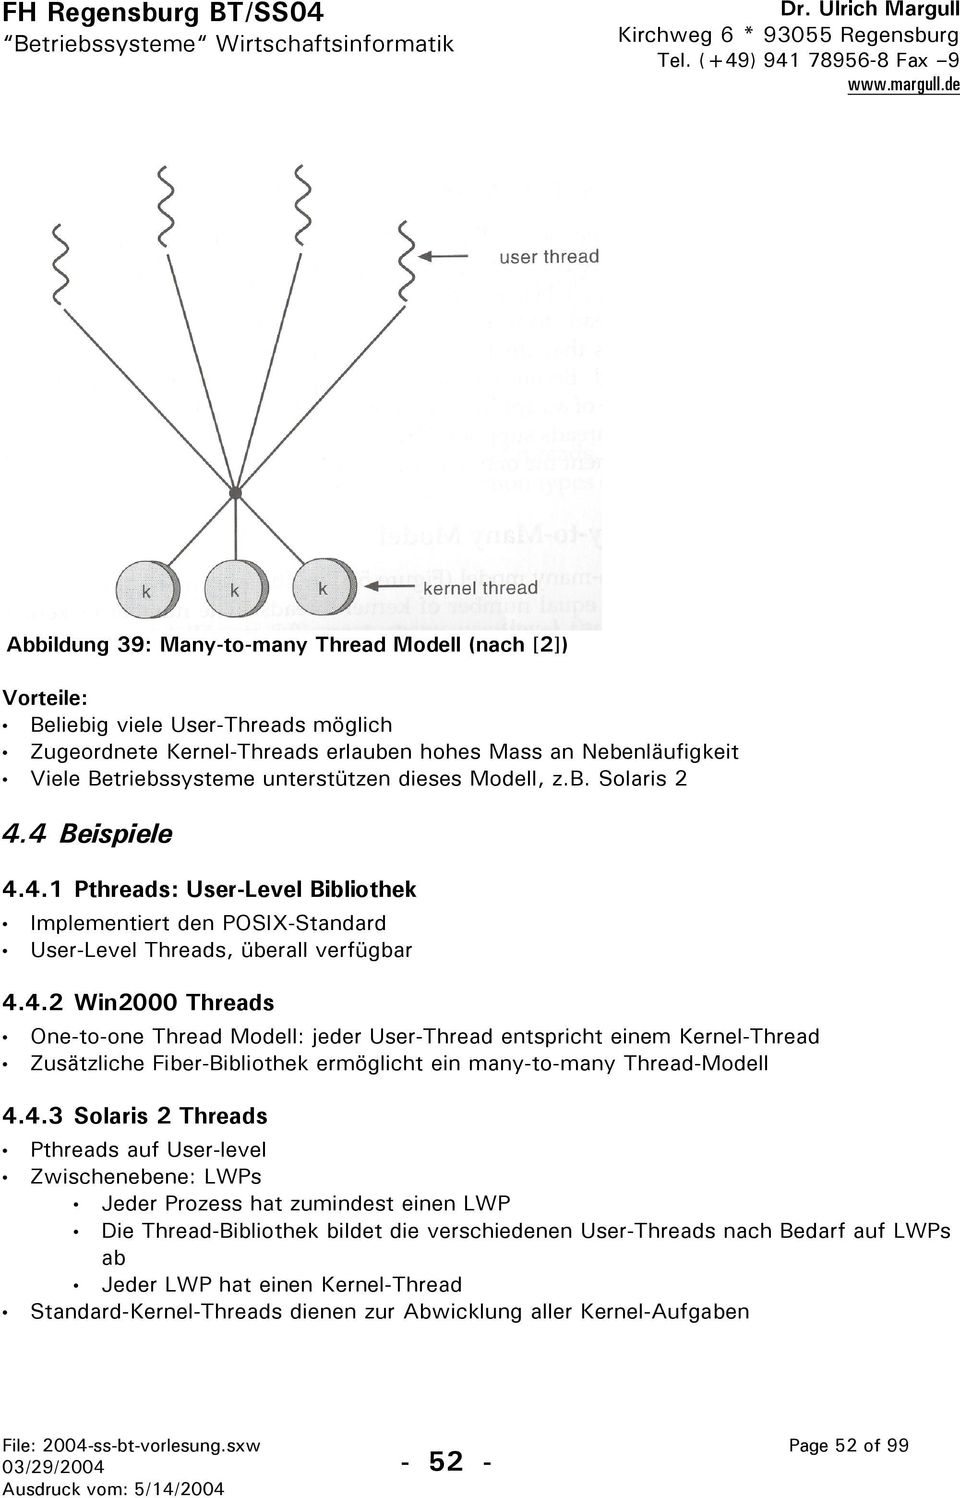 4.3 Solaris 2 Threads Pthreads auf User-level Zwischenebene: LWPs Jeder Prozess hat zumindest einen LWP Die Thread-Bibliothek bildet die verschiedenen User-Threads nach Bedarf auf LWPs ab Jeder LWP